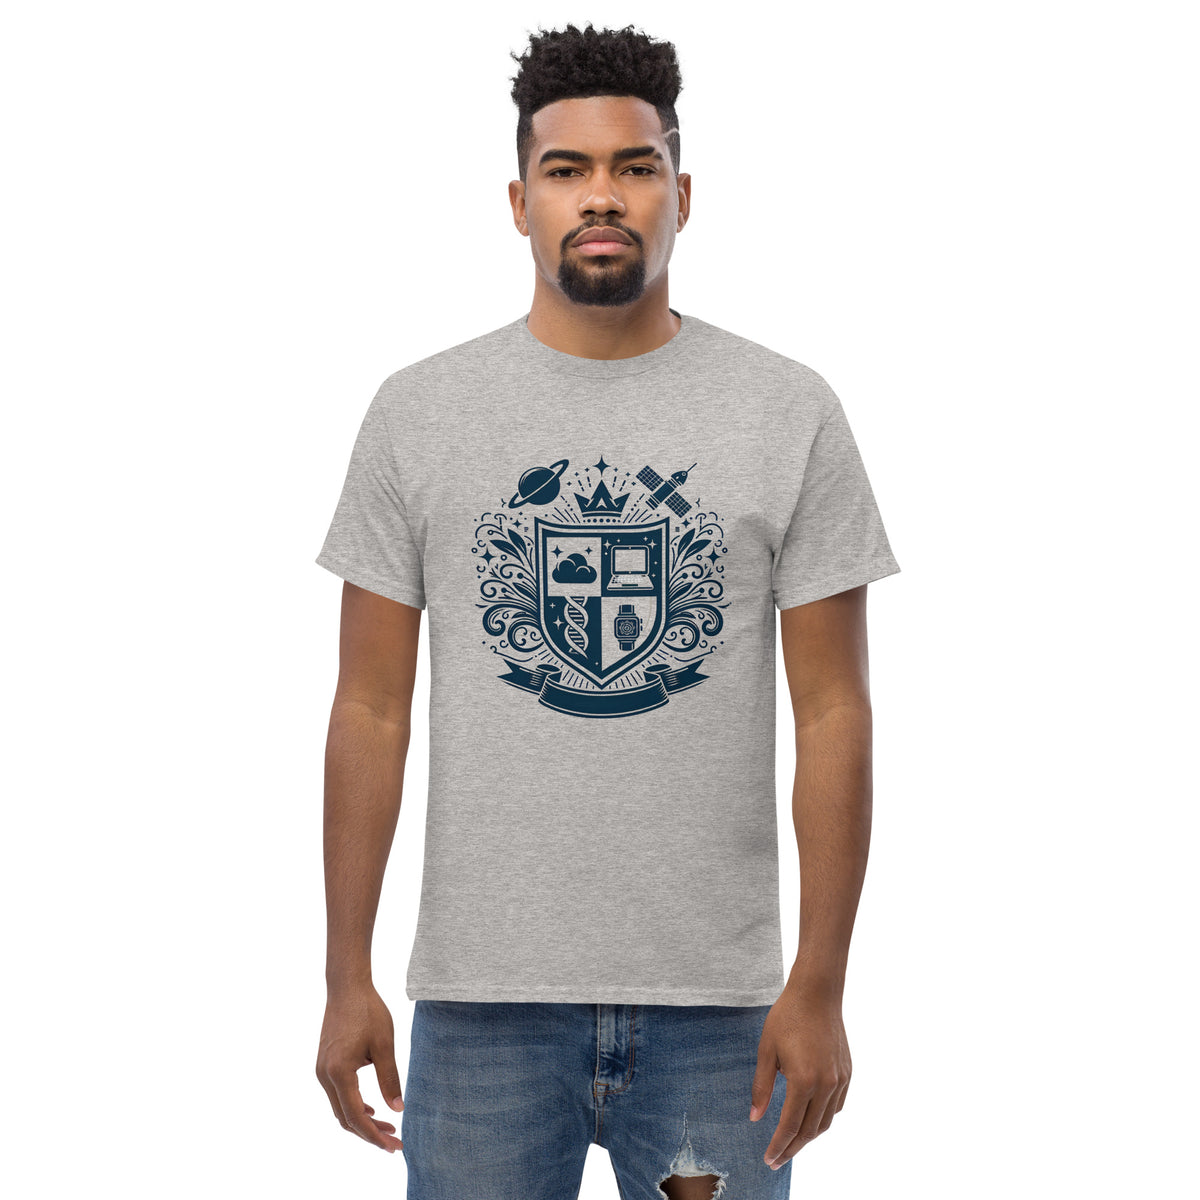 Modern Family Crest - Explorer  | Men's Classic T-shirt